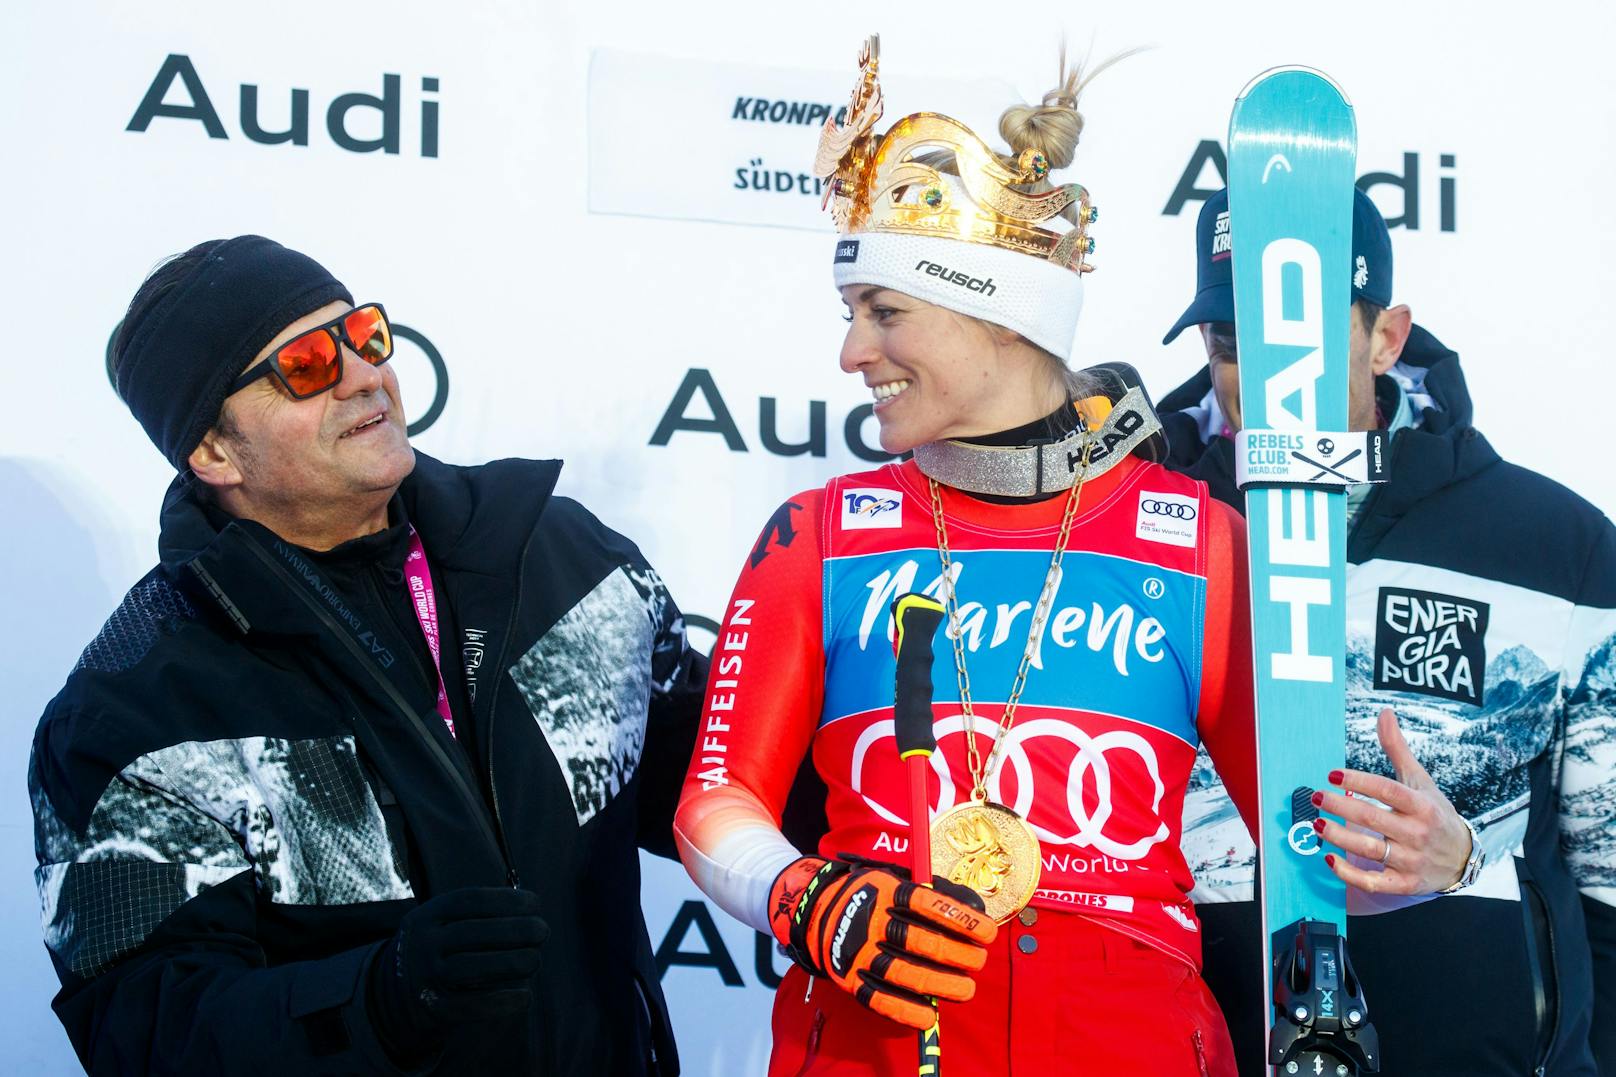 Nach dem Sieg im Super G von Cortina konnte sich Lara Gut-Behrami auch über den Sieg am Kronplatz im Riesentorlauf freuen. Julia Scheib rettete die Ehre der ÖSV-Damen, wurde Neunte.